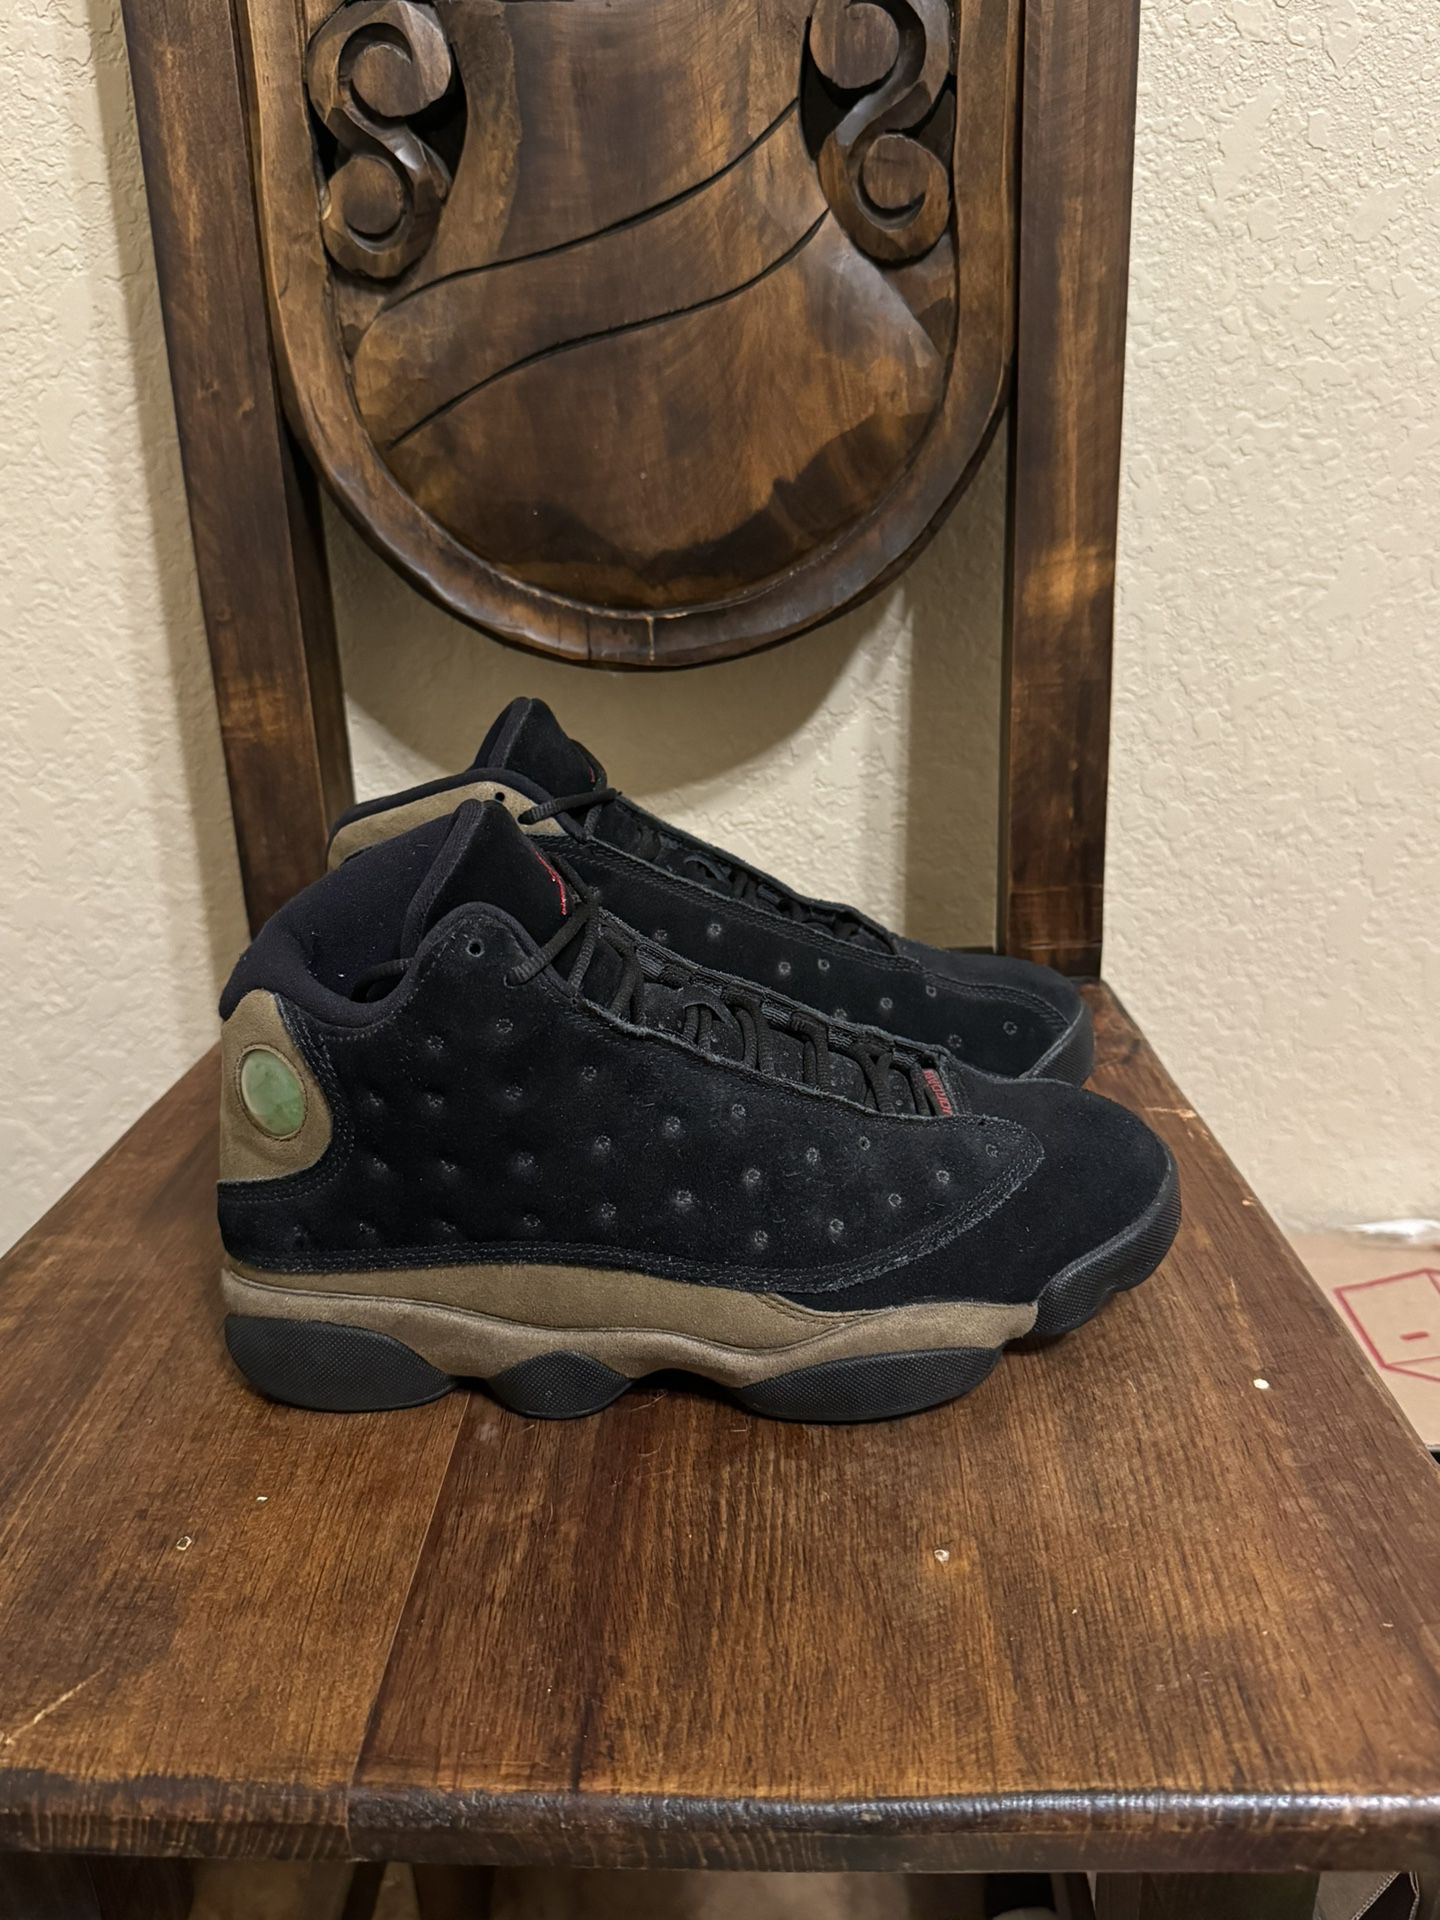 Air Jordan Retro 13 Olive Men’s Size 8.5 Jordans Sneakers Retros Shoes